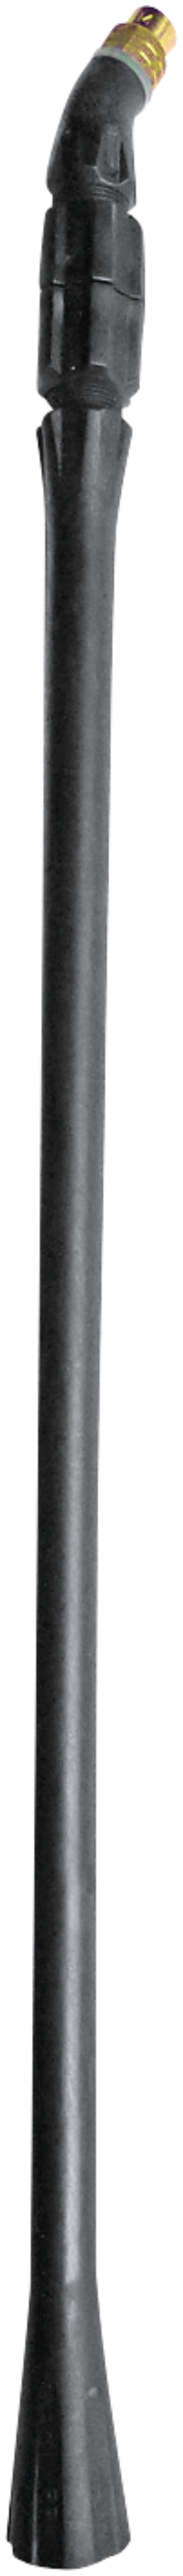 MESTO Spritzrohr, stufenlos ausziehb 52-90 cm, Kunststoff mit Düse